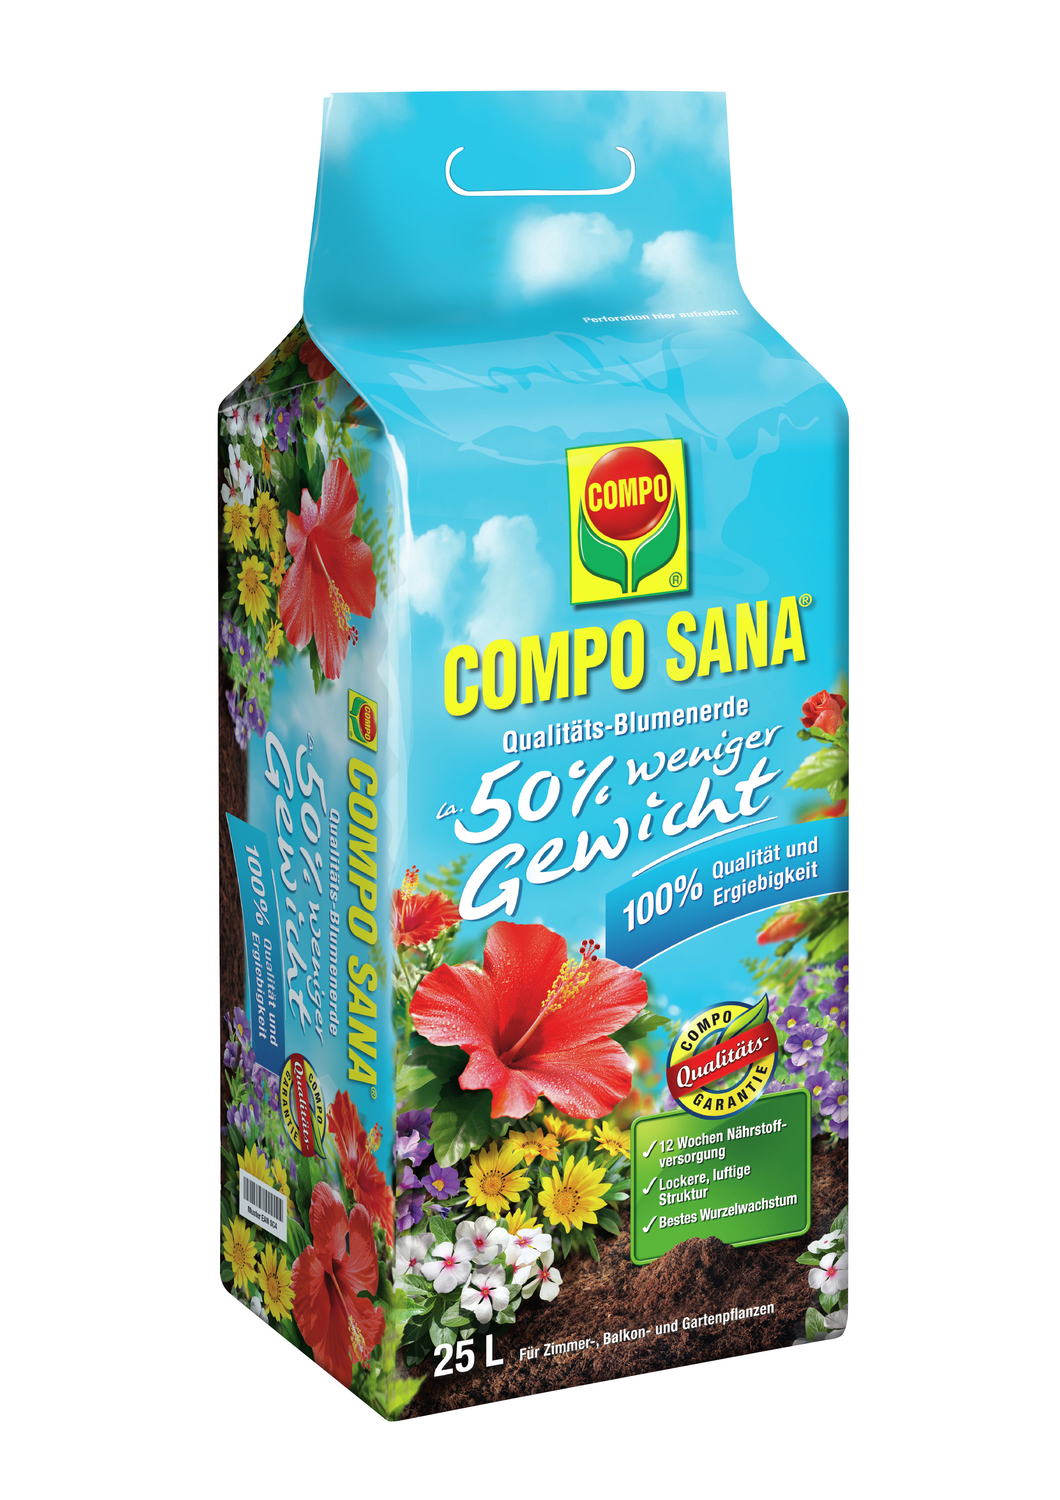 COMPO SANA Qualitäts-Blumenerde 25 Liter 50 % weniger Gewicht